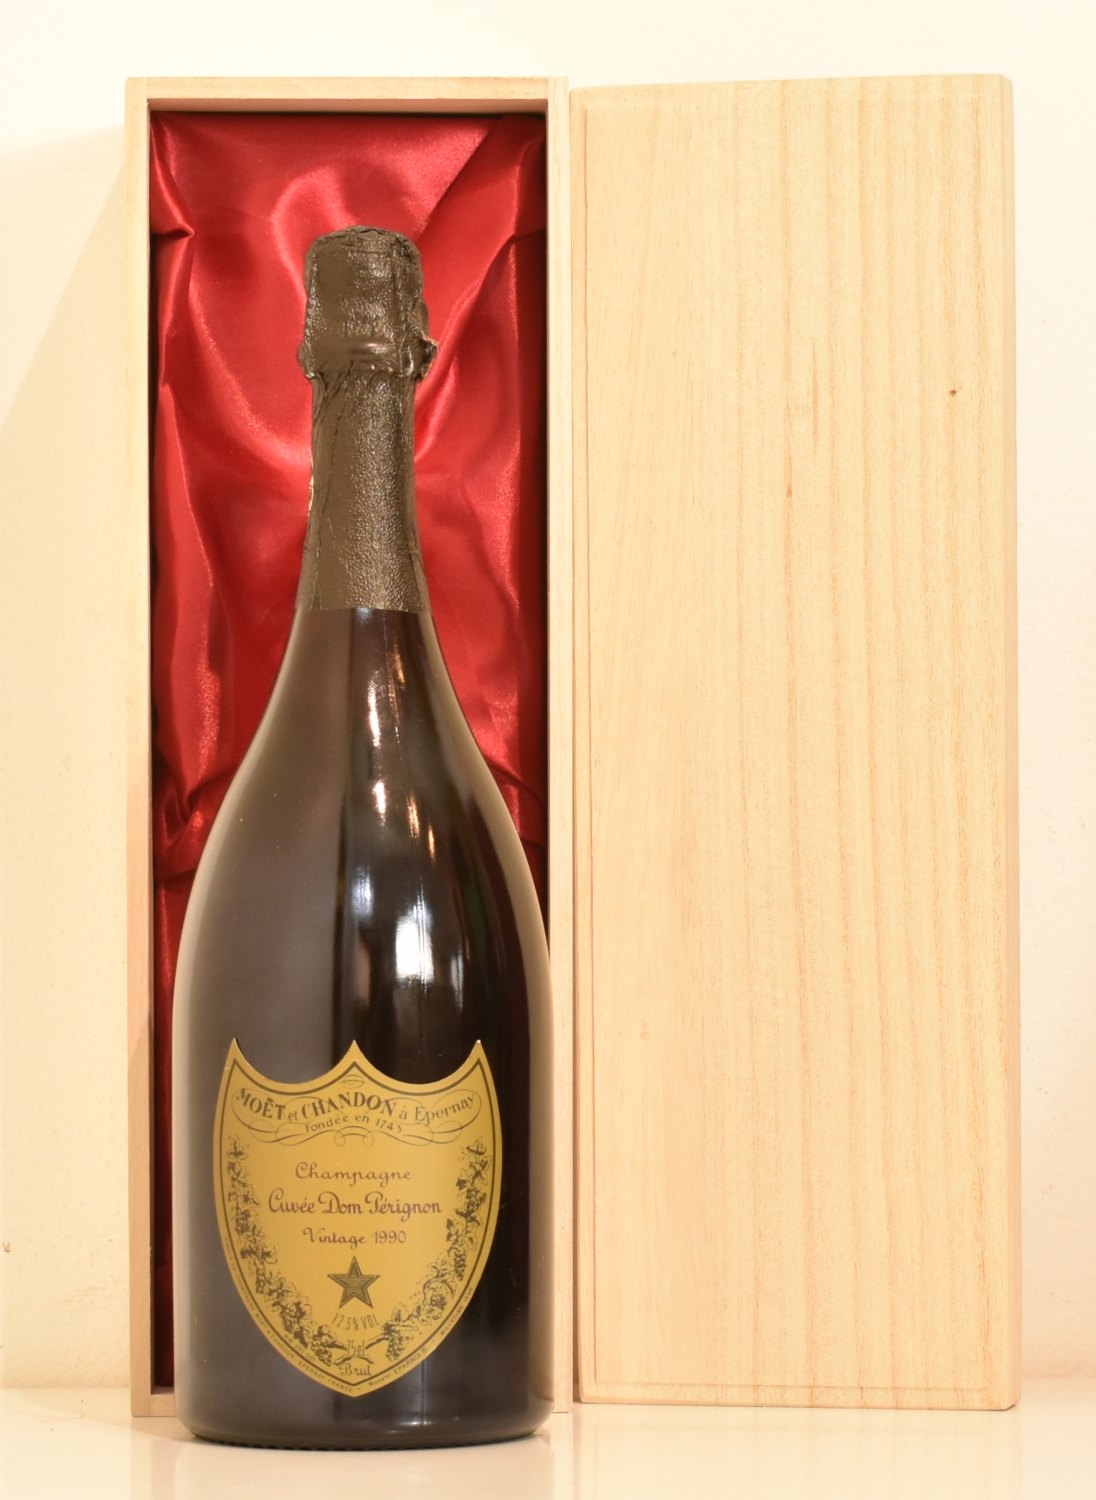 Dompe【435】　ドンペリニヨン 白 Vintage 2013 シャンパン未開栓